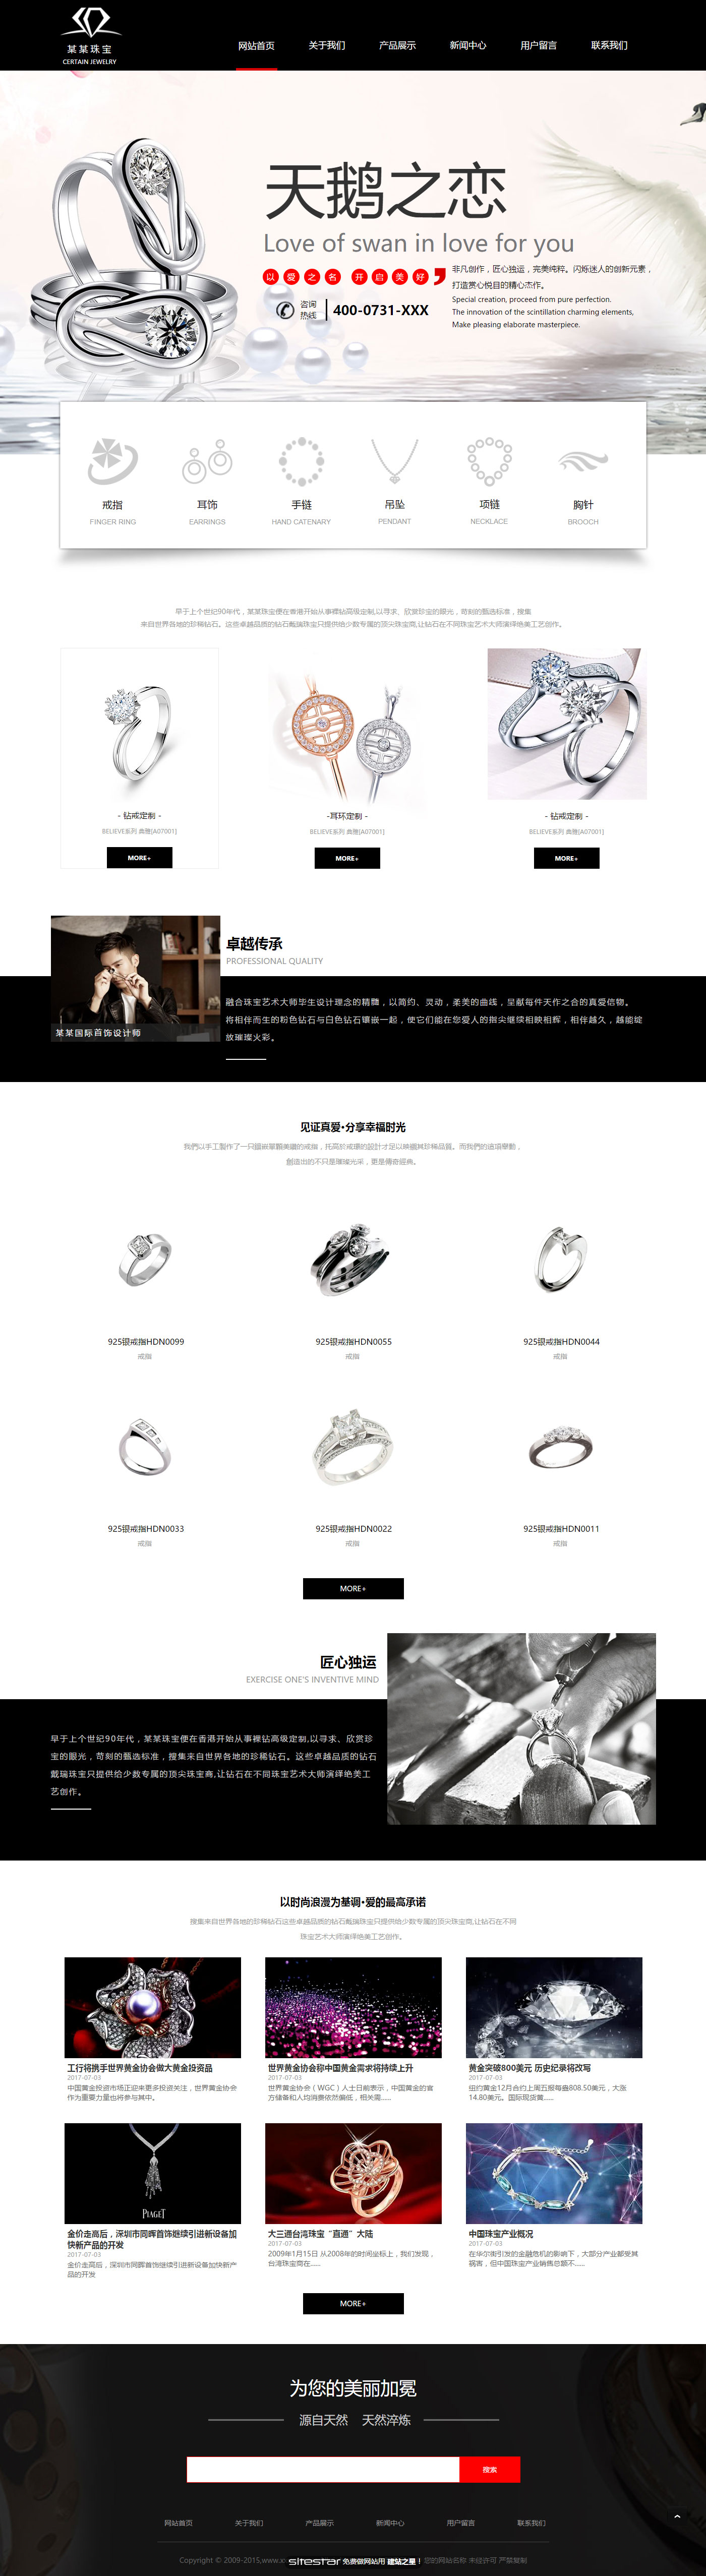 企业网站精美模板-jewelry-246